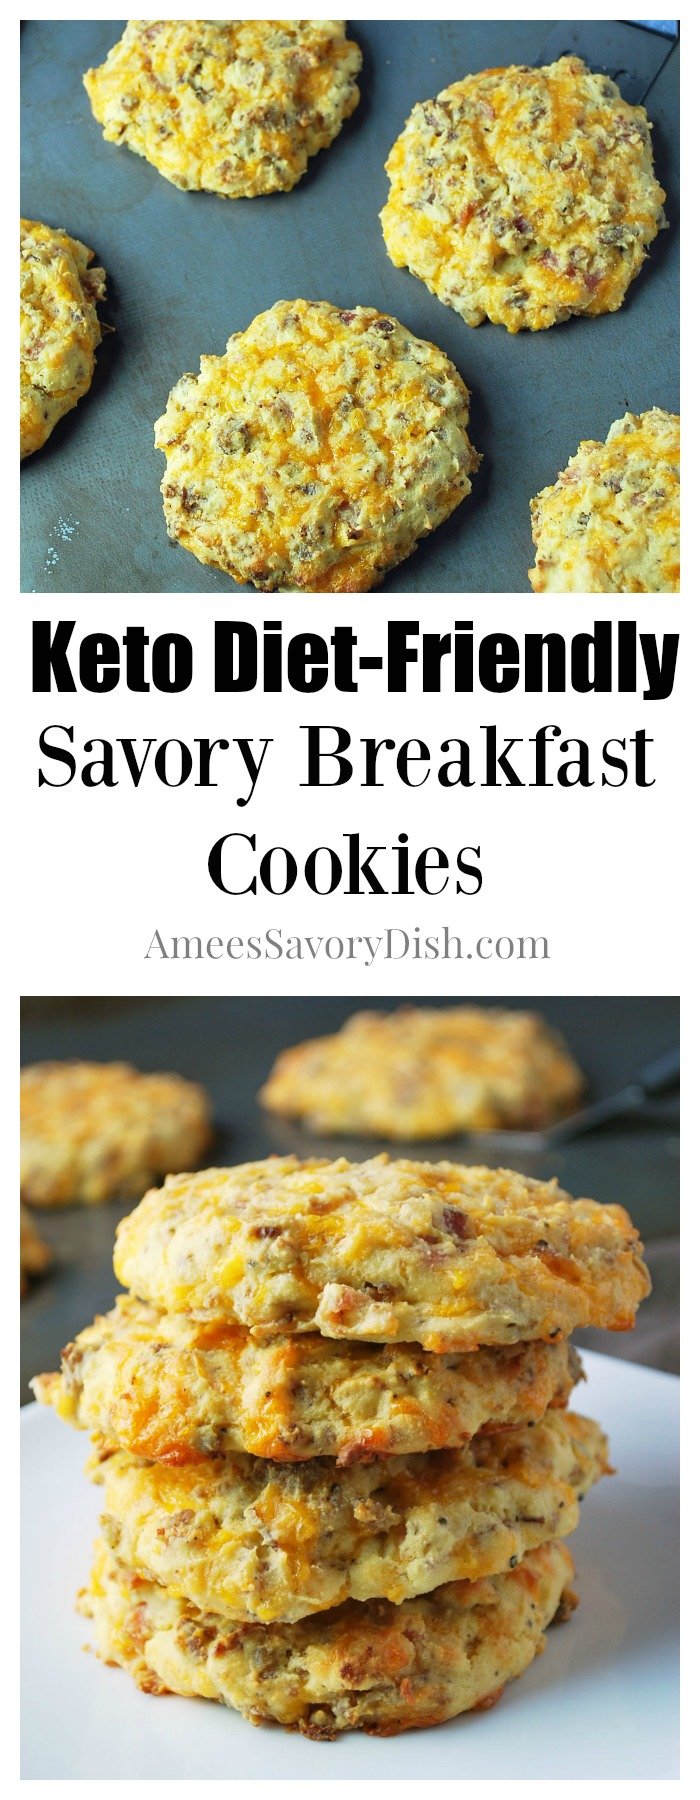 Keto Diet-Friendly Savory Breakfast Cookies